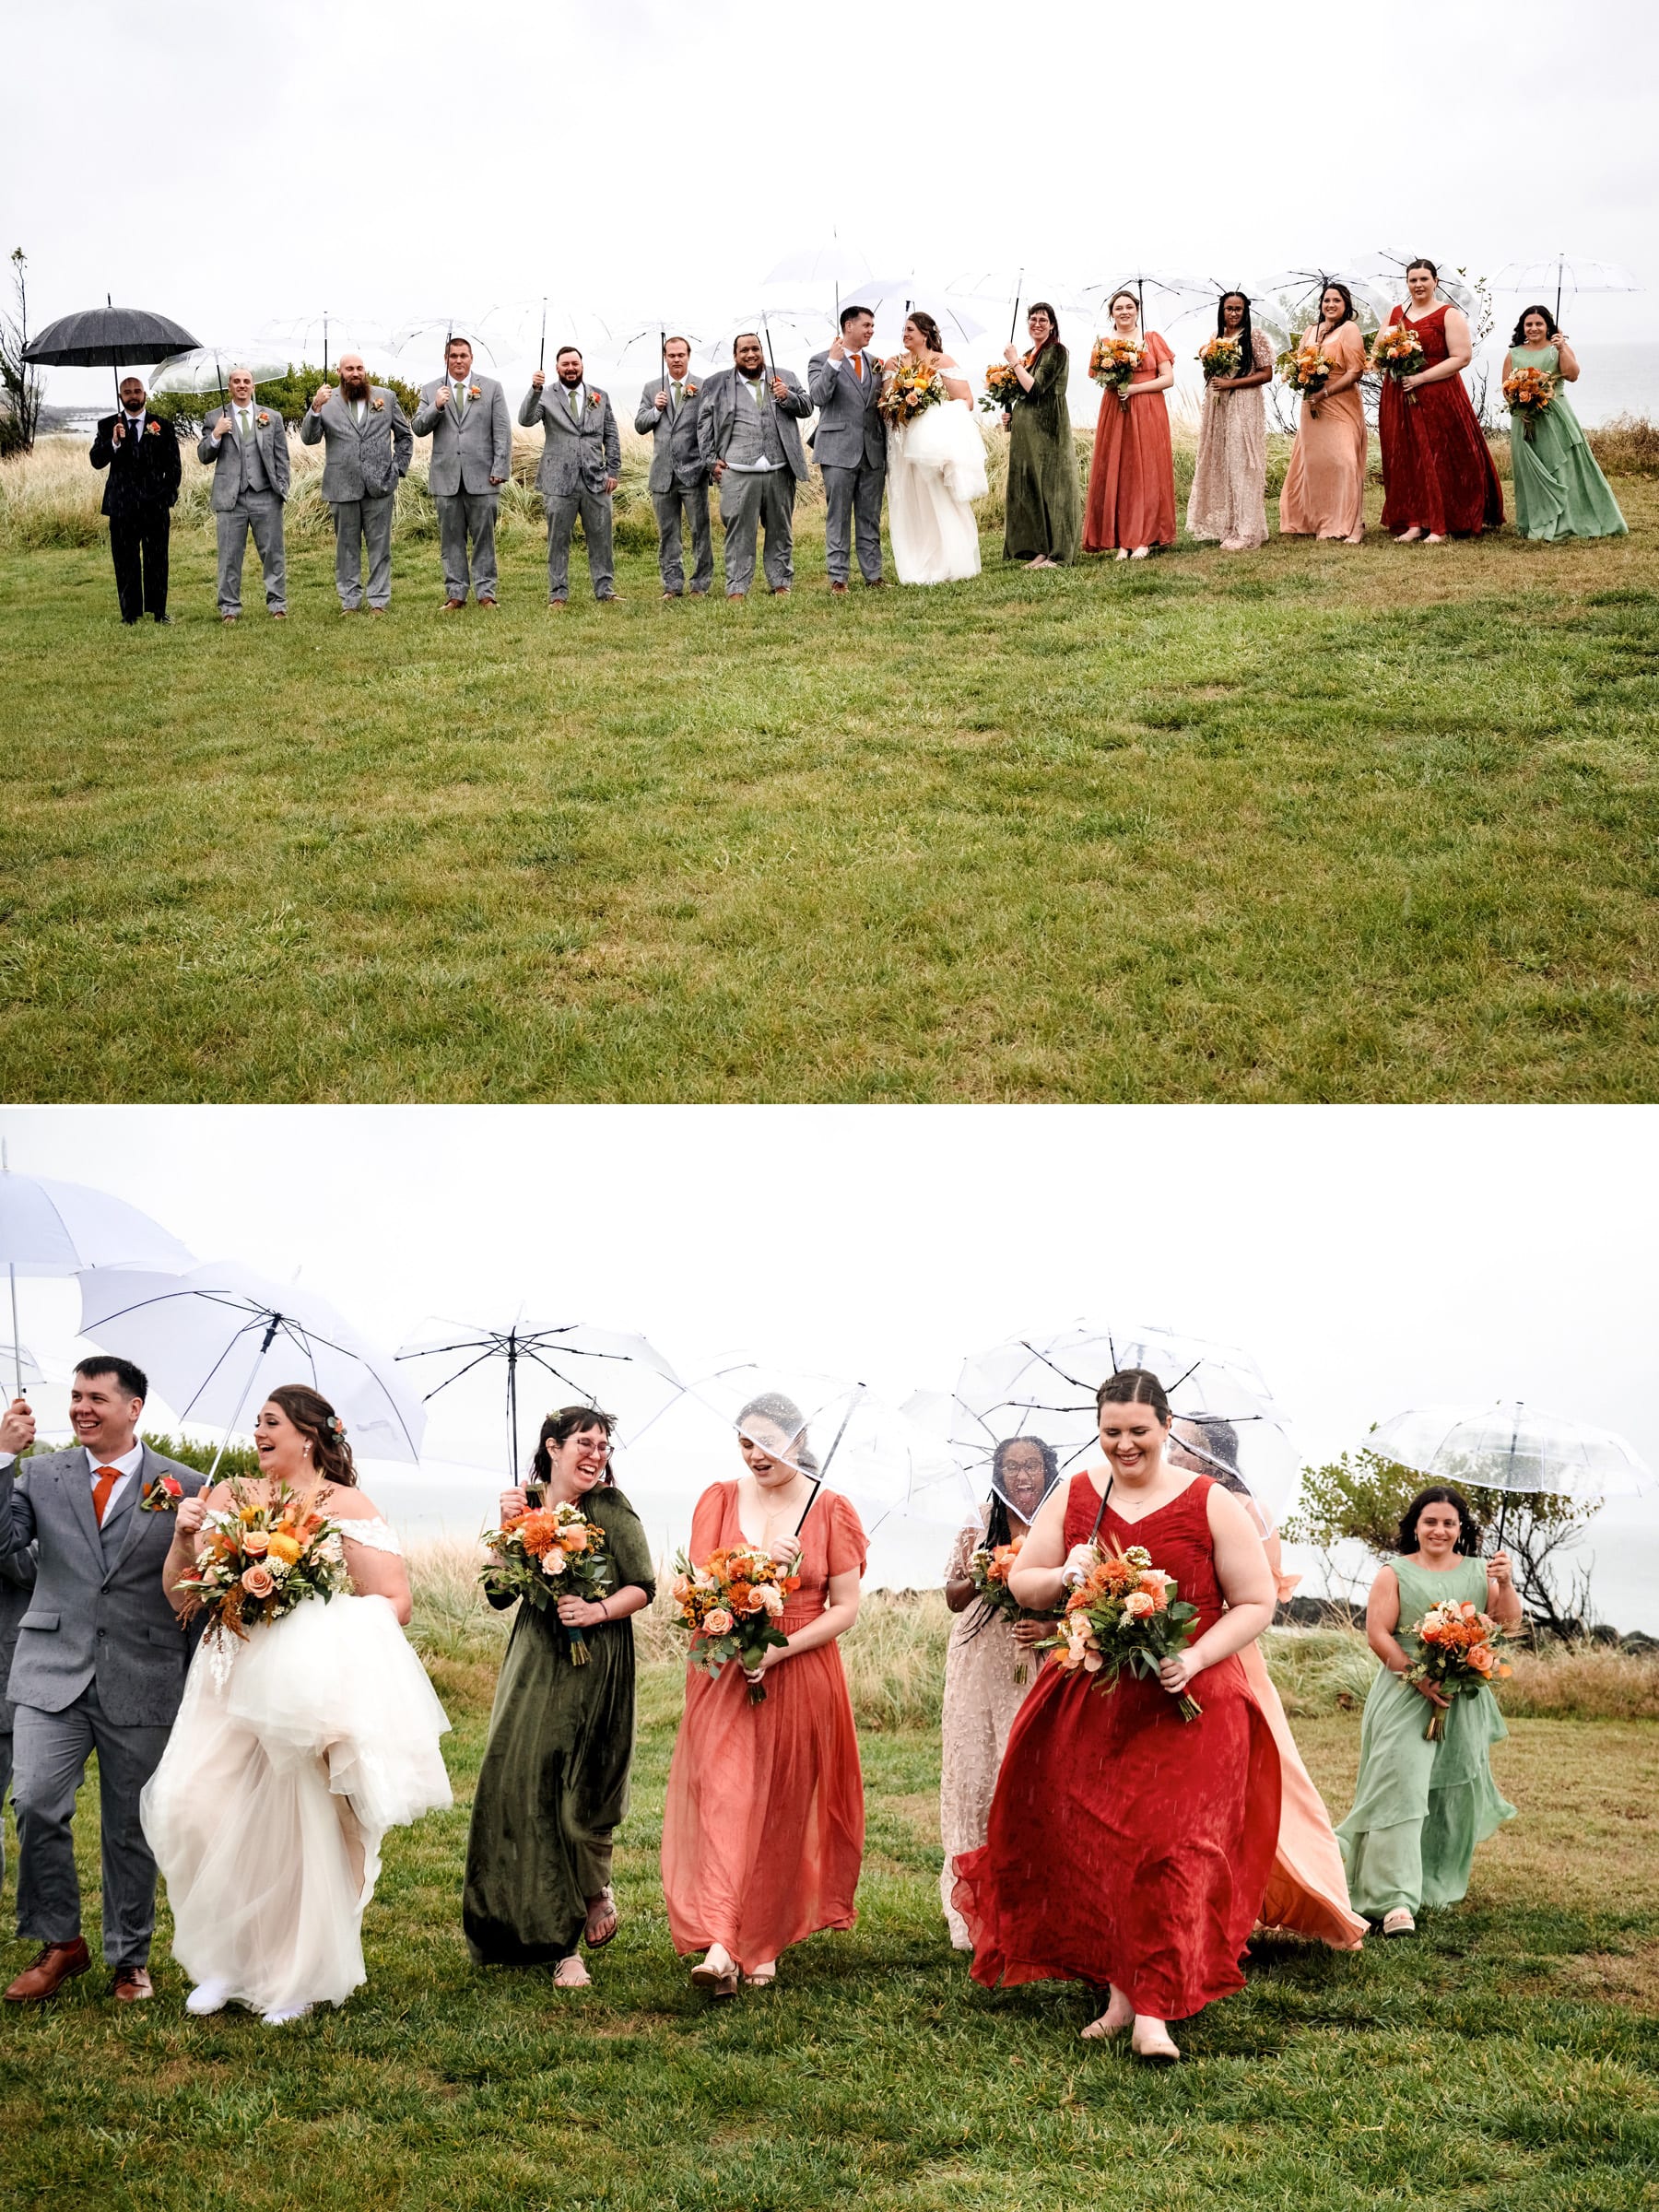 rainy day wedding party photos at Sandy Hook Chapel